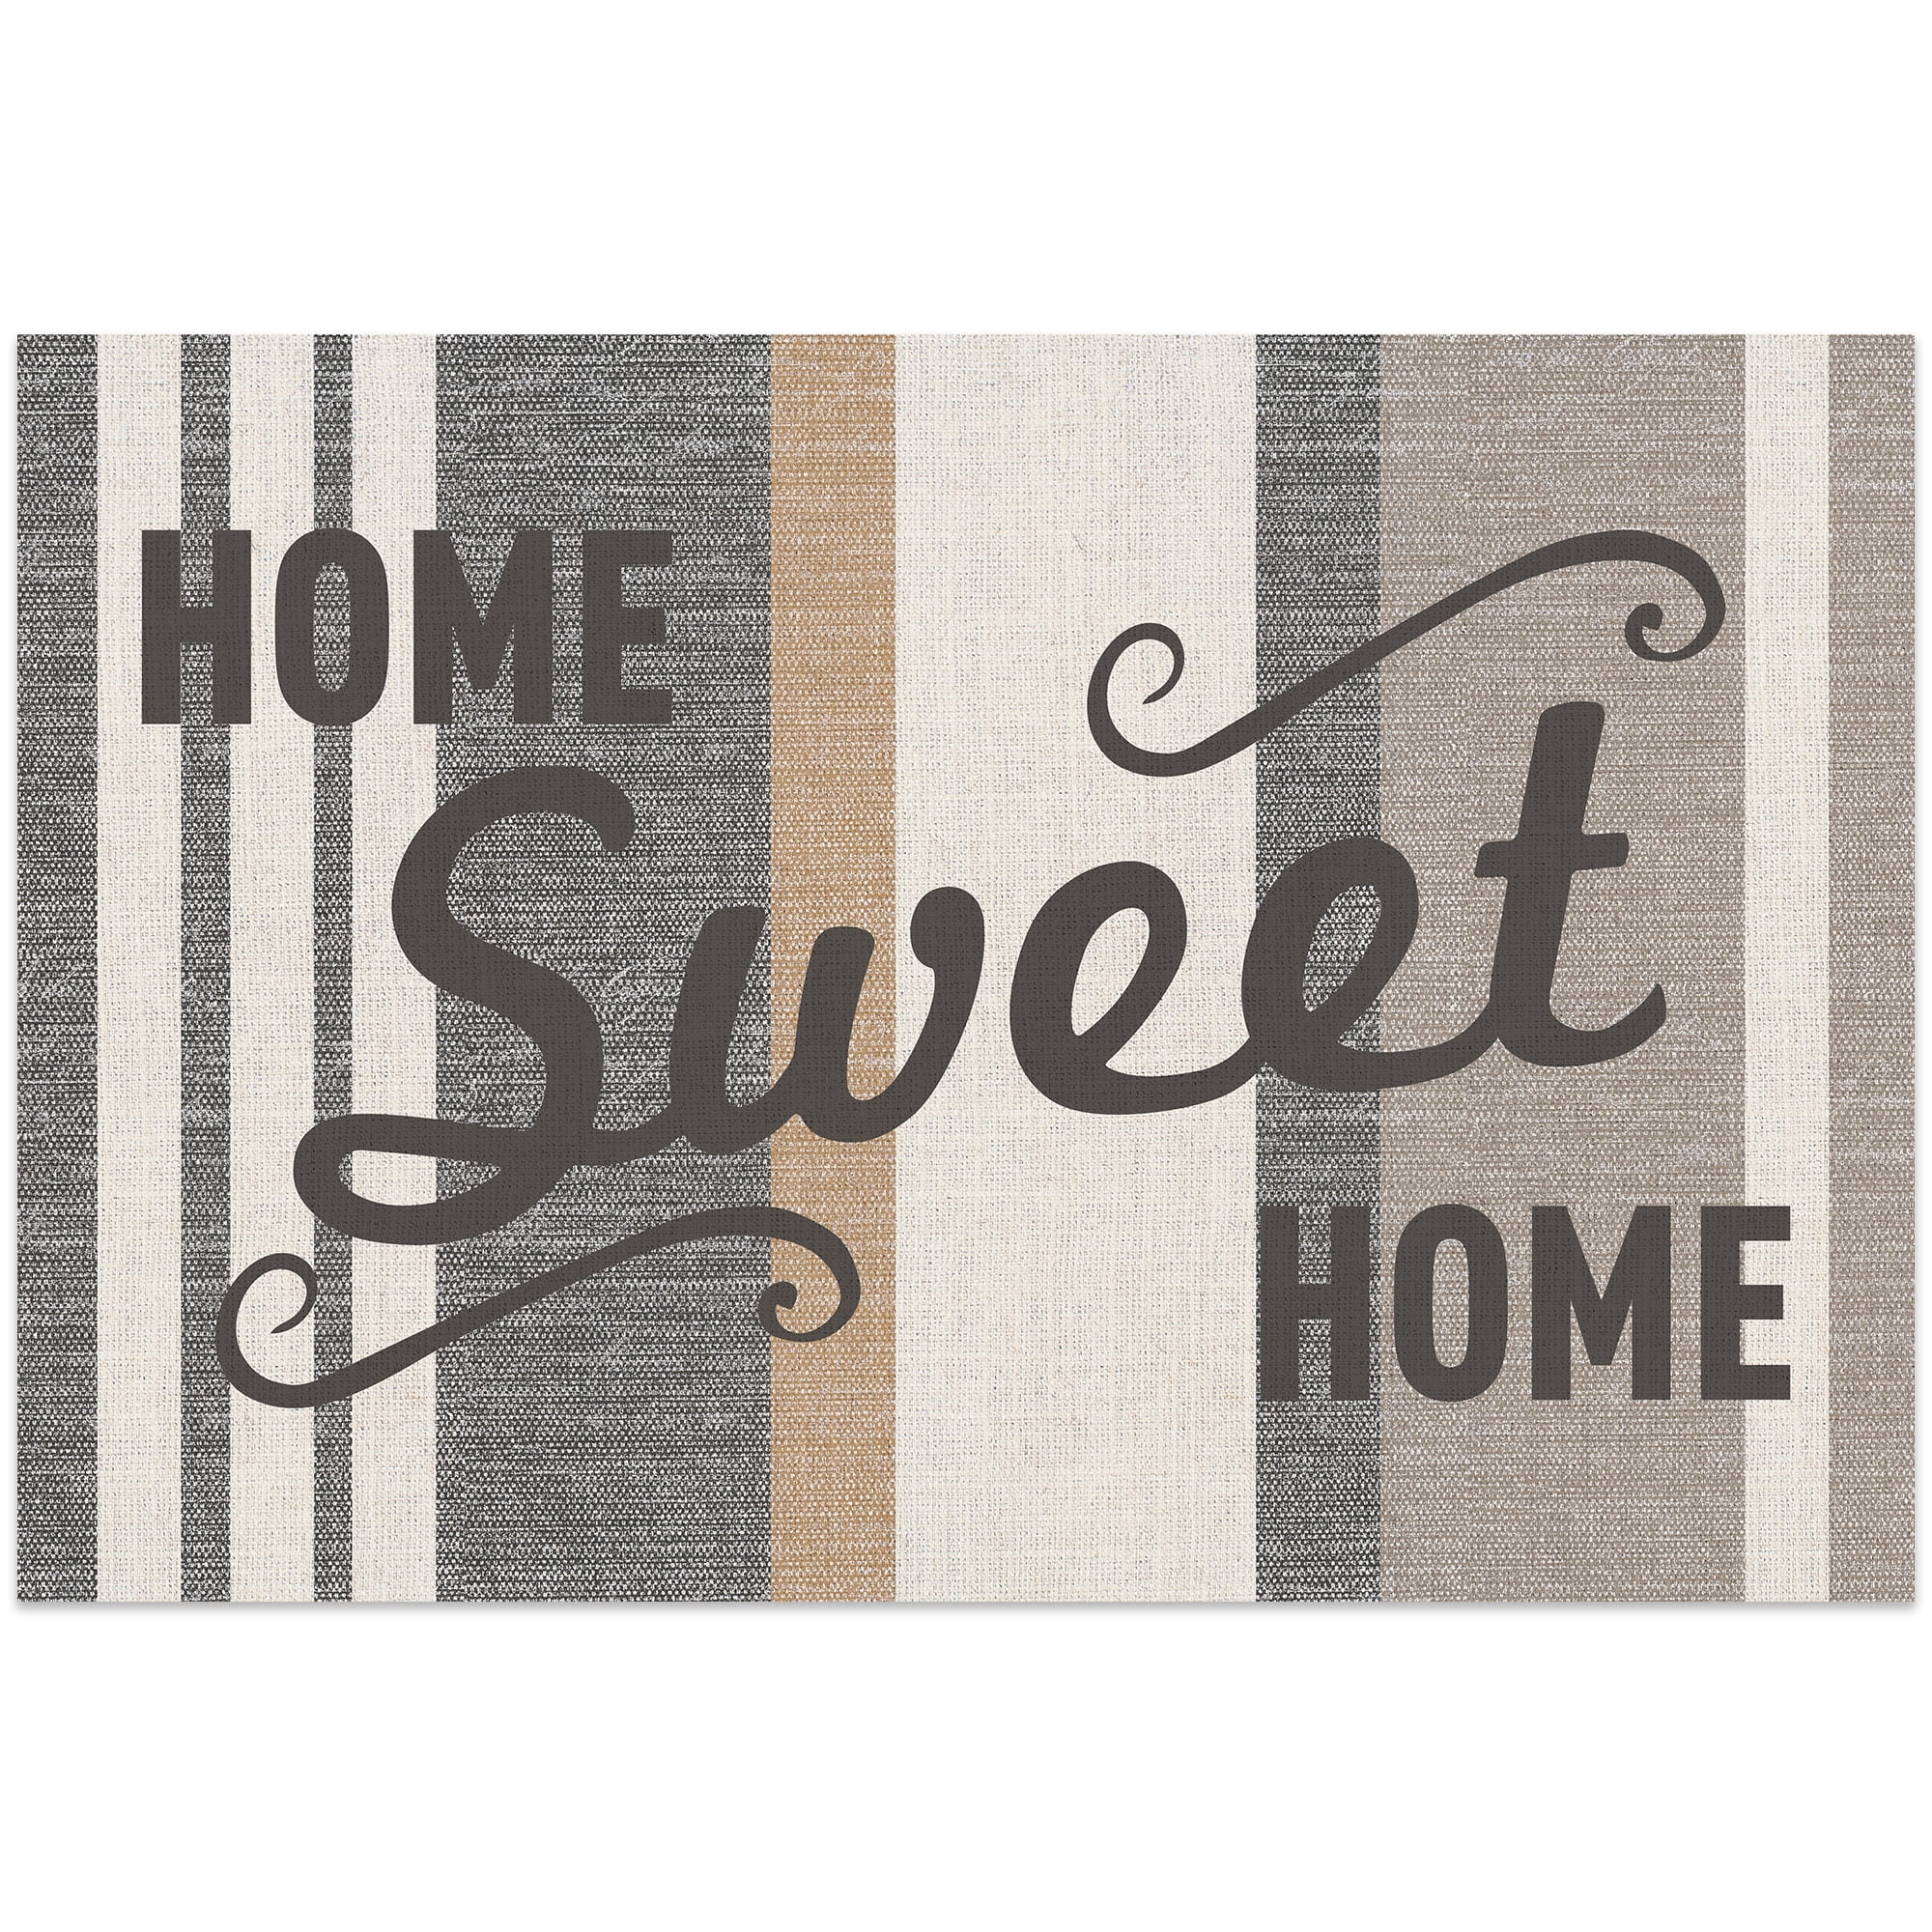 home Sweet Home Three Cats Door Mat, Indoor Mat, Creative Doormat